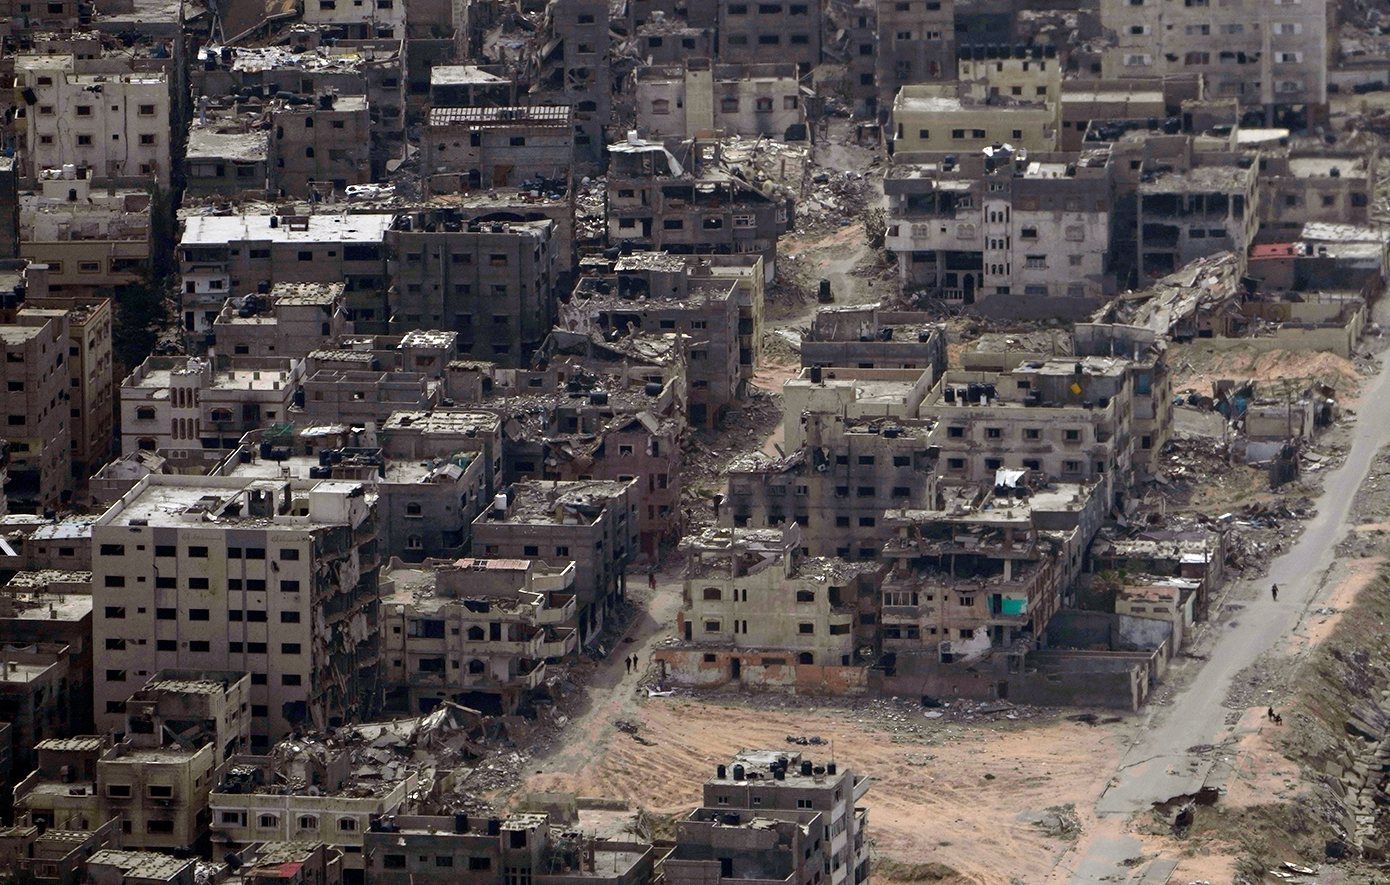 Τα ΗΑΕ αντιδρούν στη δήλωση Νετανιάχου ότι θα μπορούσαν να βοηθήσουν μια μελλοντική κυβέρνηση στη Γάζα